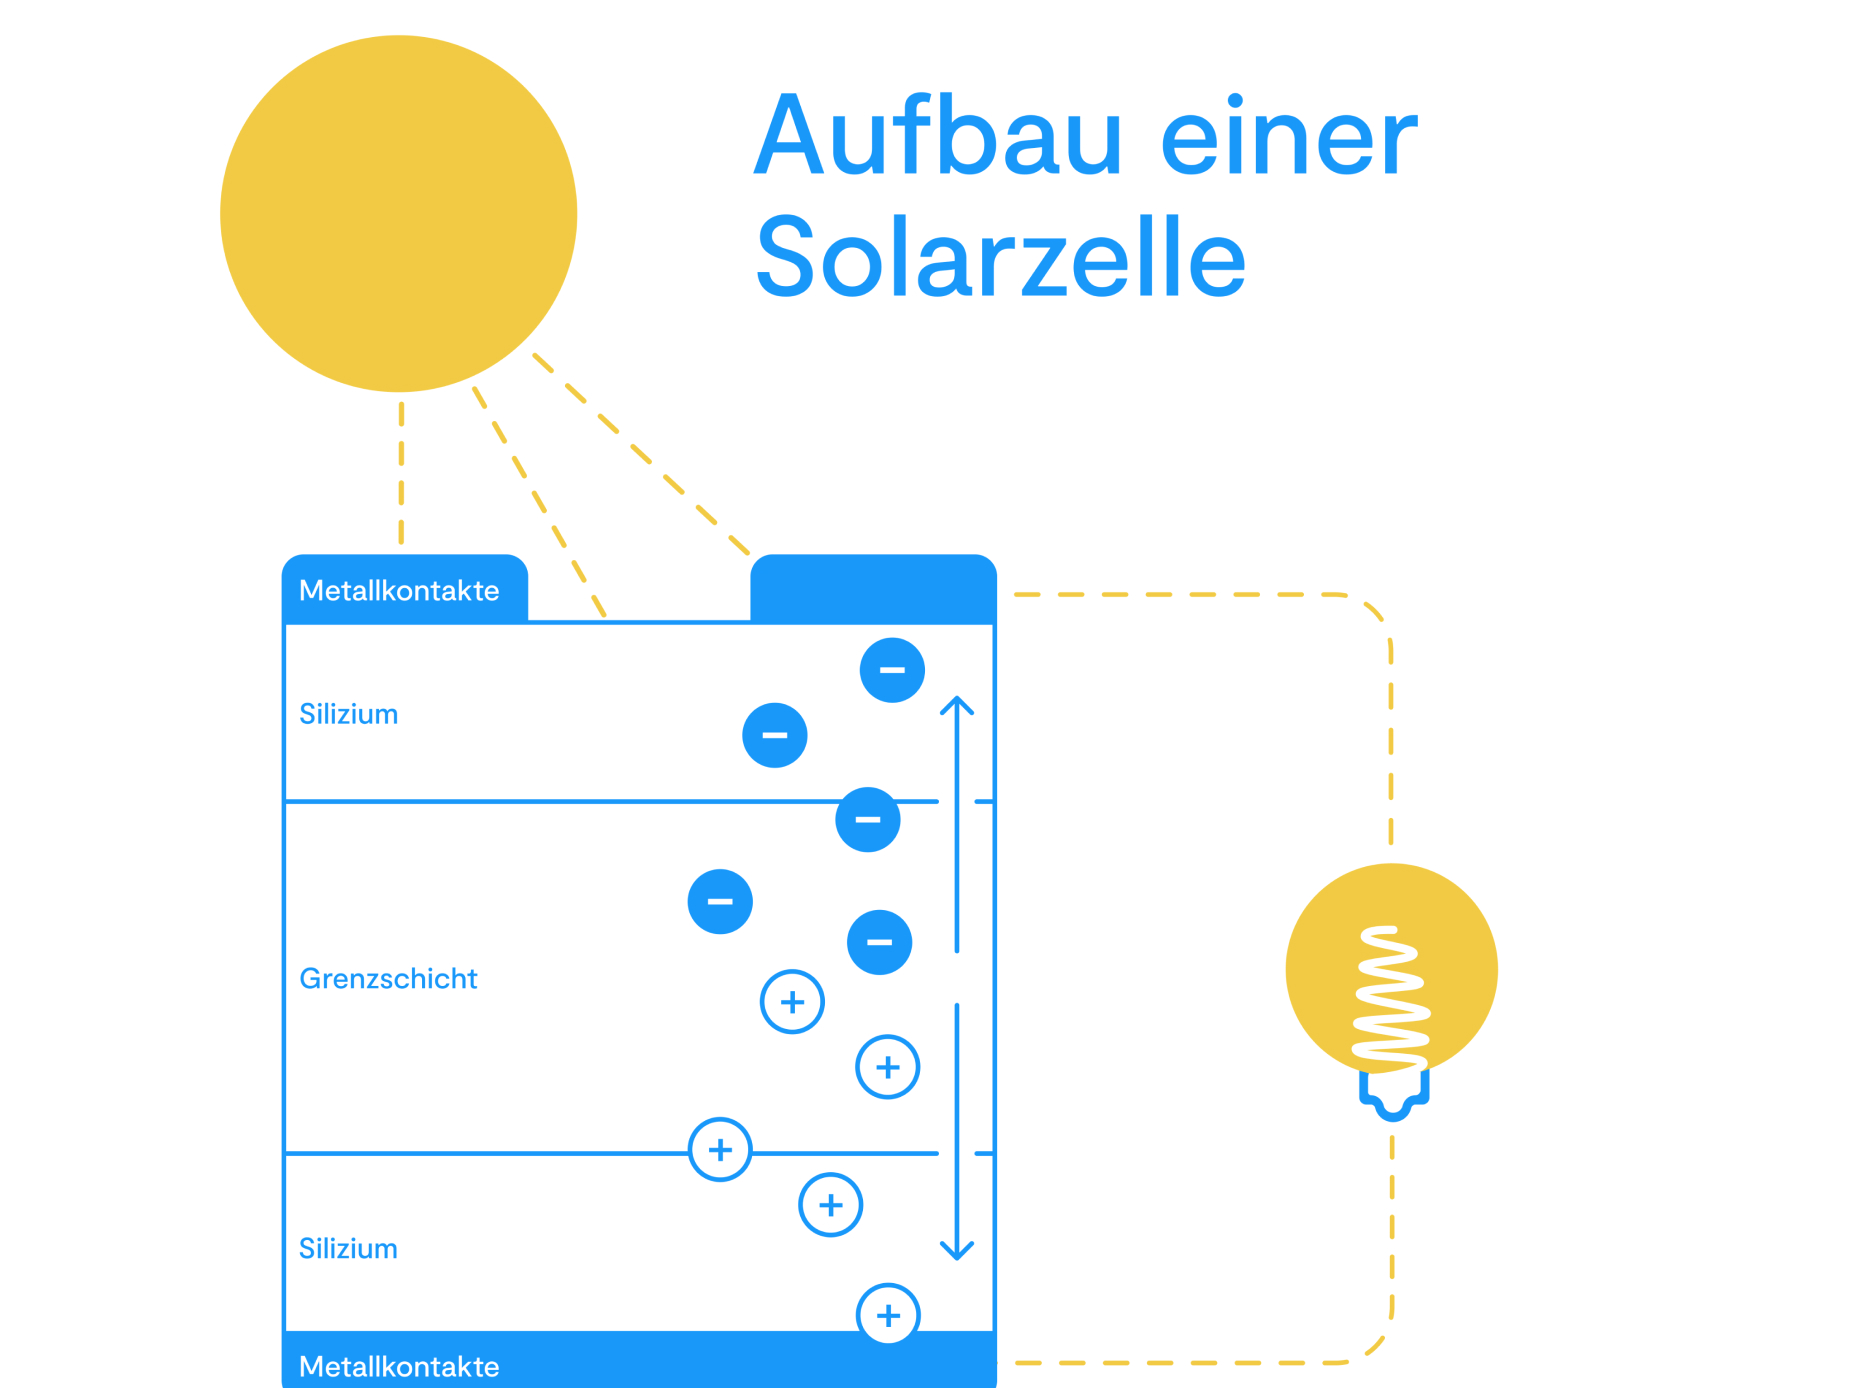 Aufbau einer Solarzelle
 